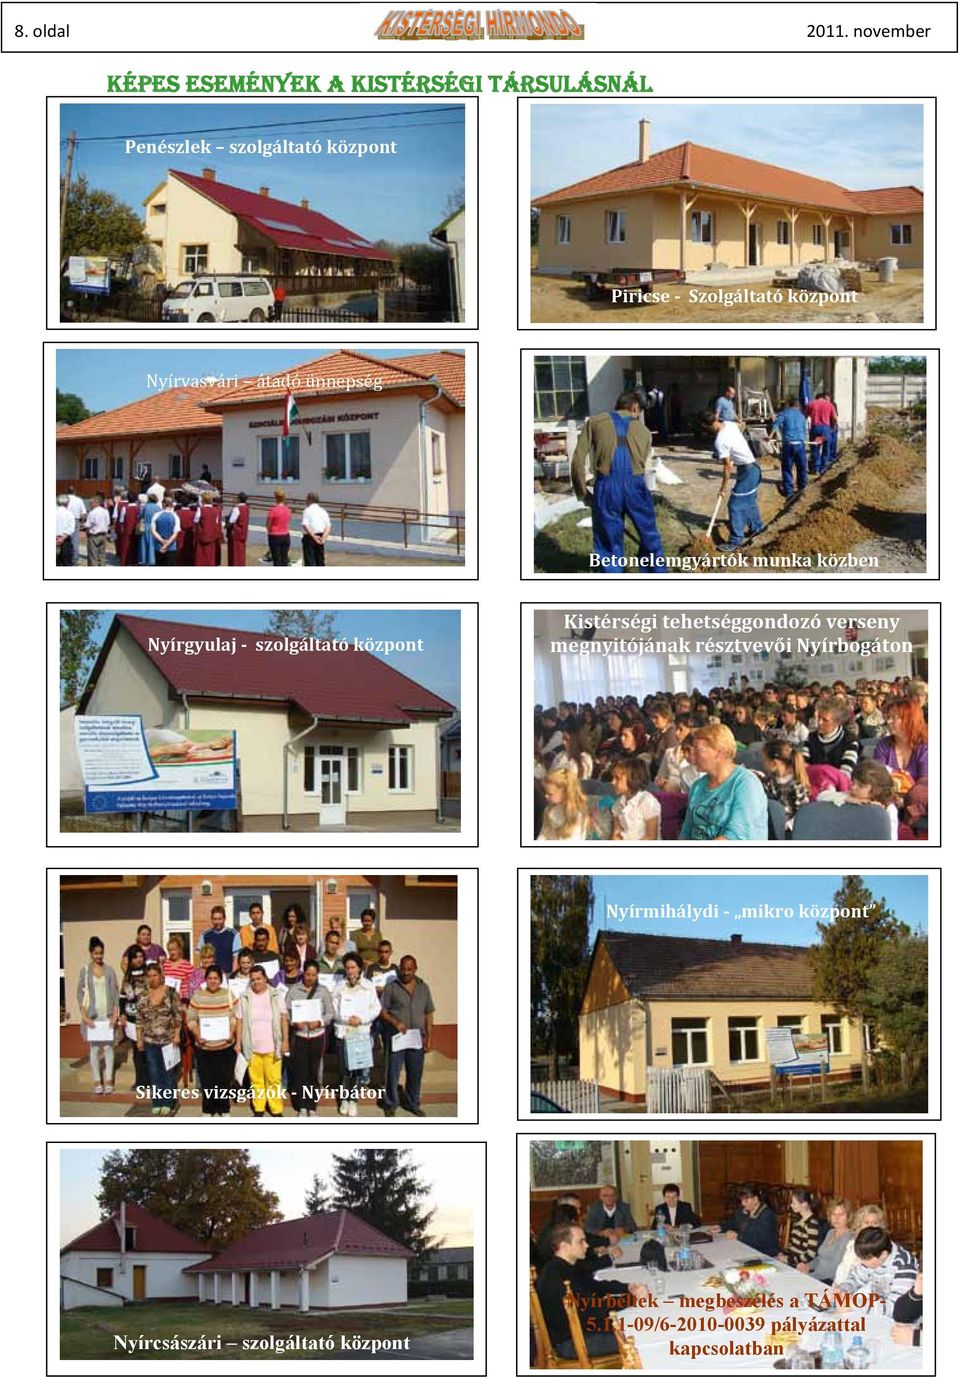 Nyírvasvári átadó ünnepség Betonelemgyártók munka közben Nyírgyulaj szolgáltató központ Kistérségi